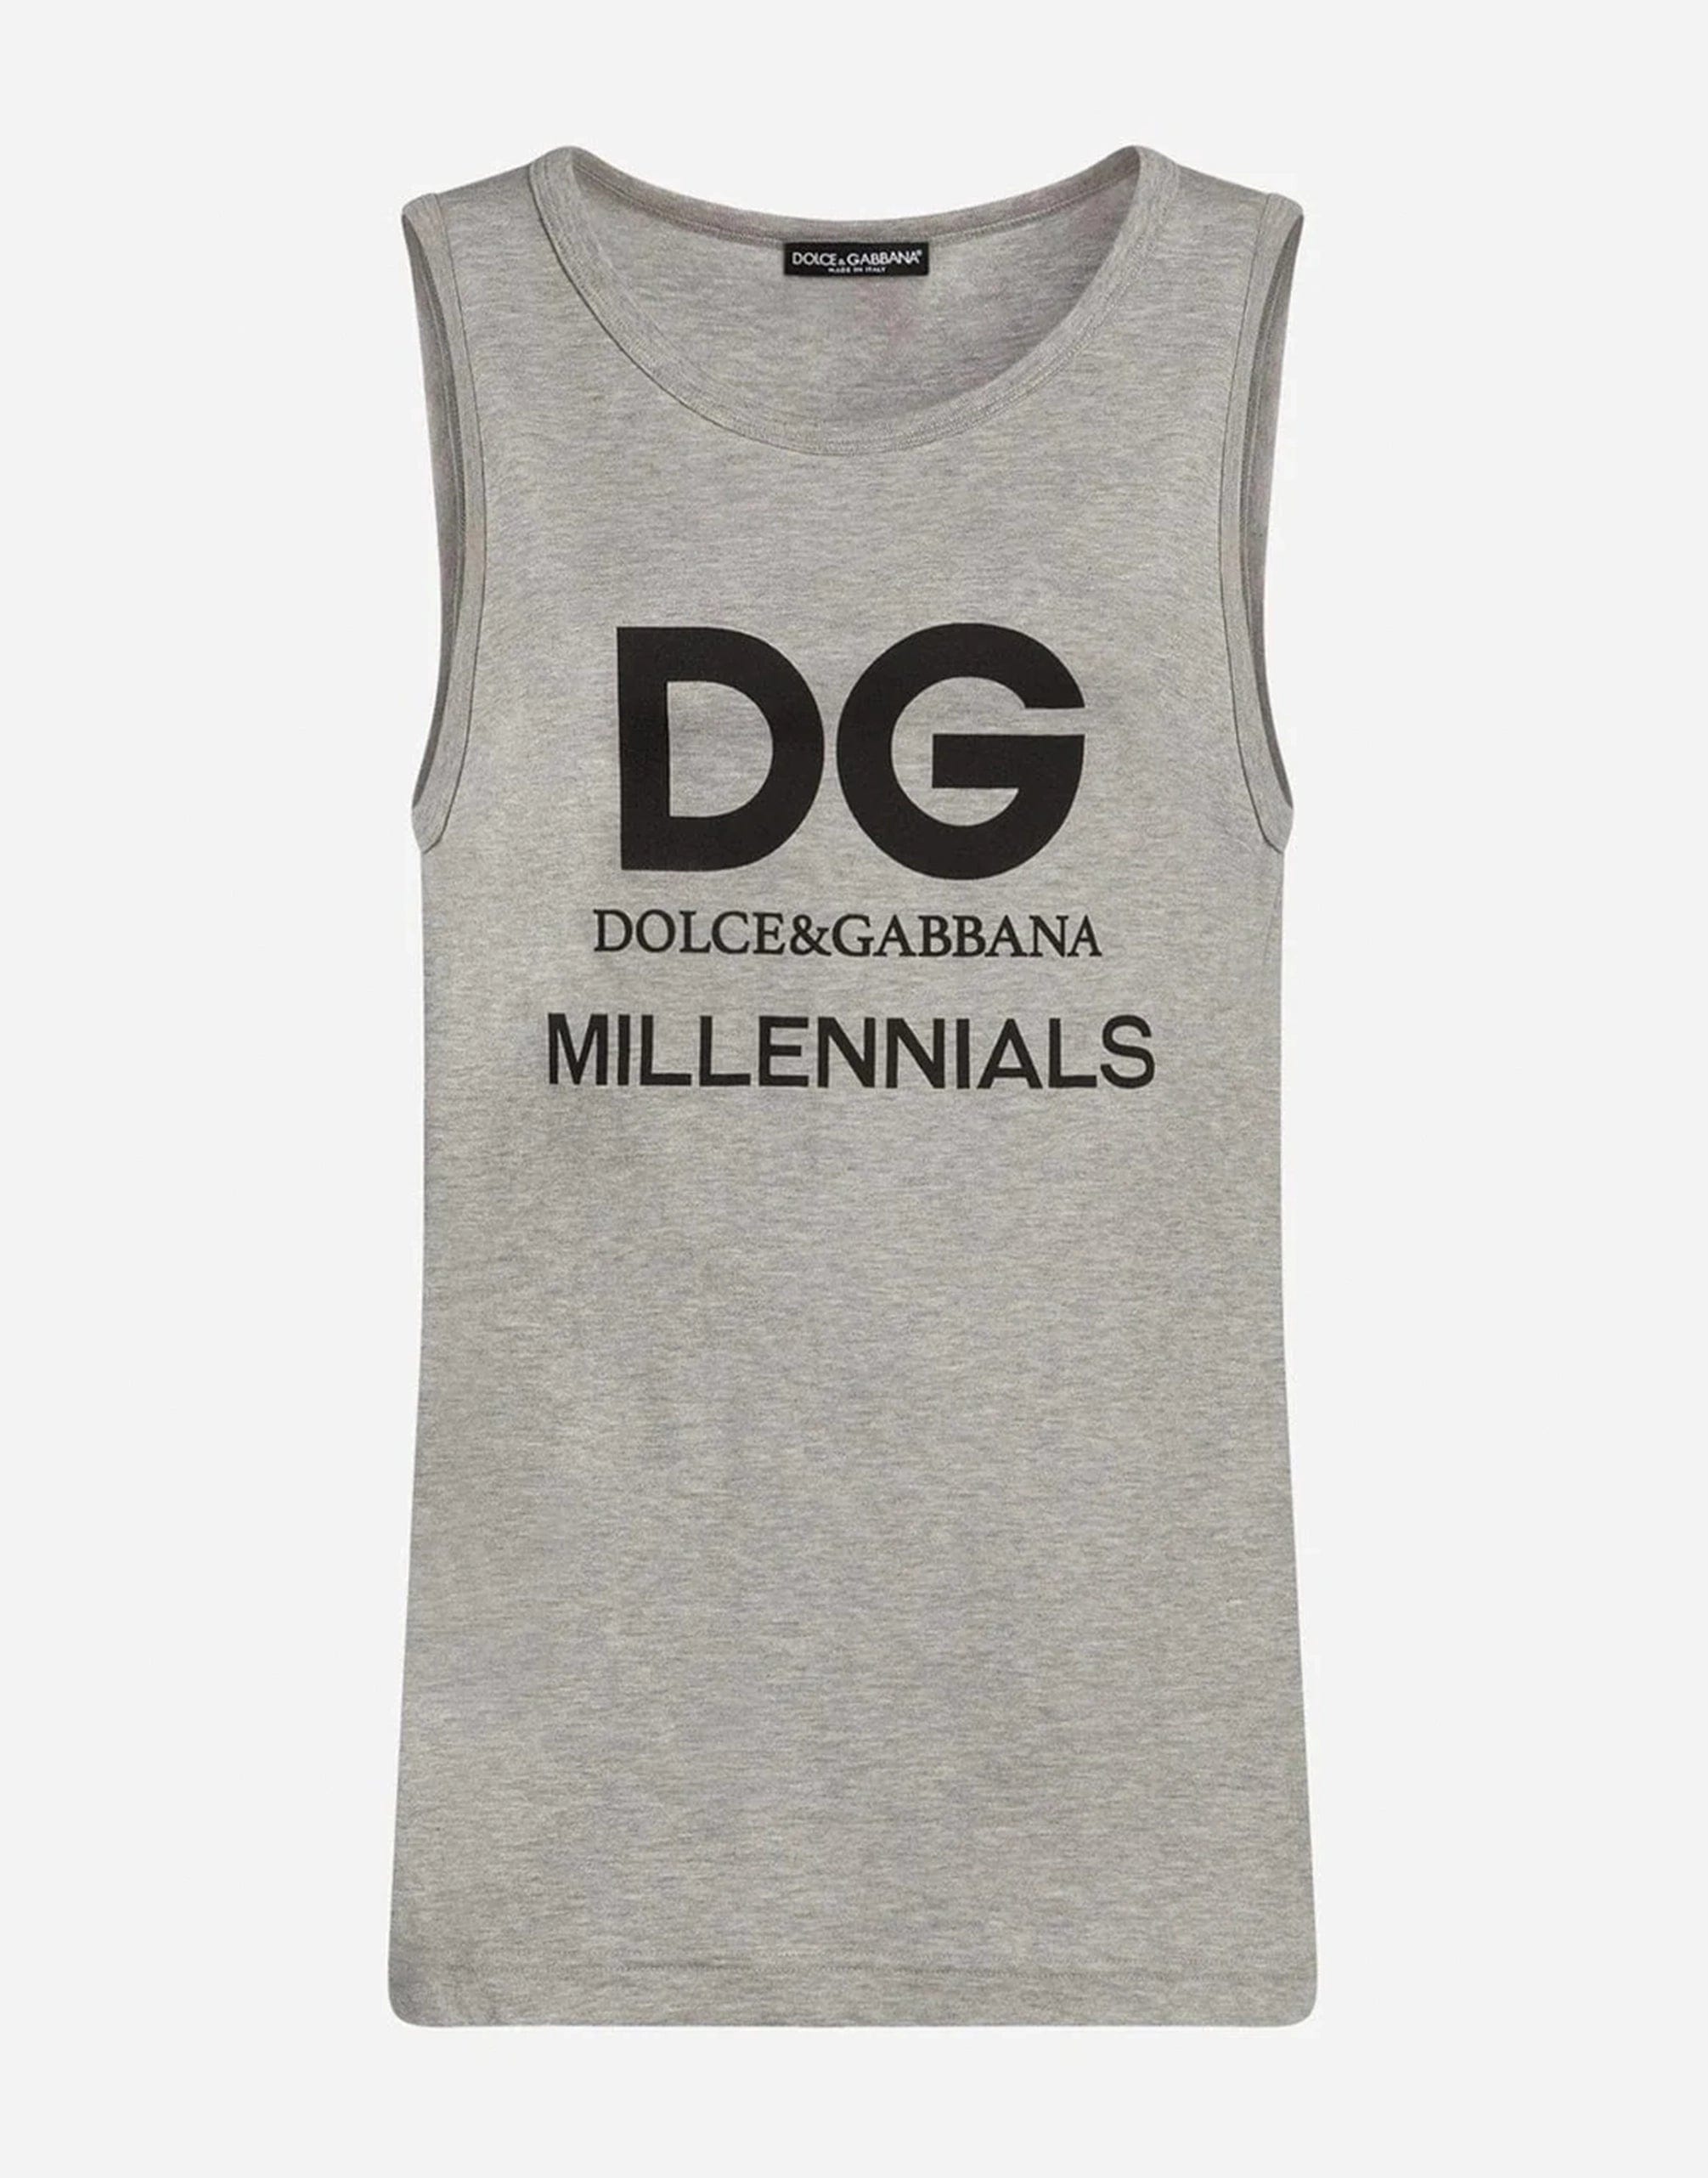 Dolce & Gabbana DG Millennials Print Tank Top